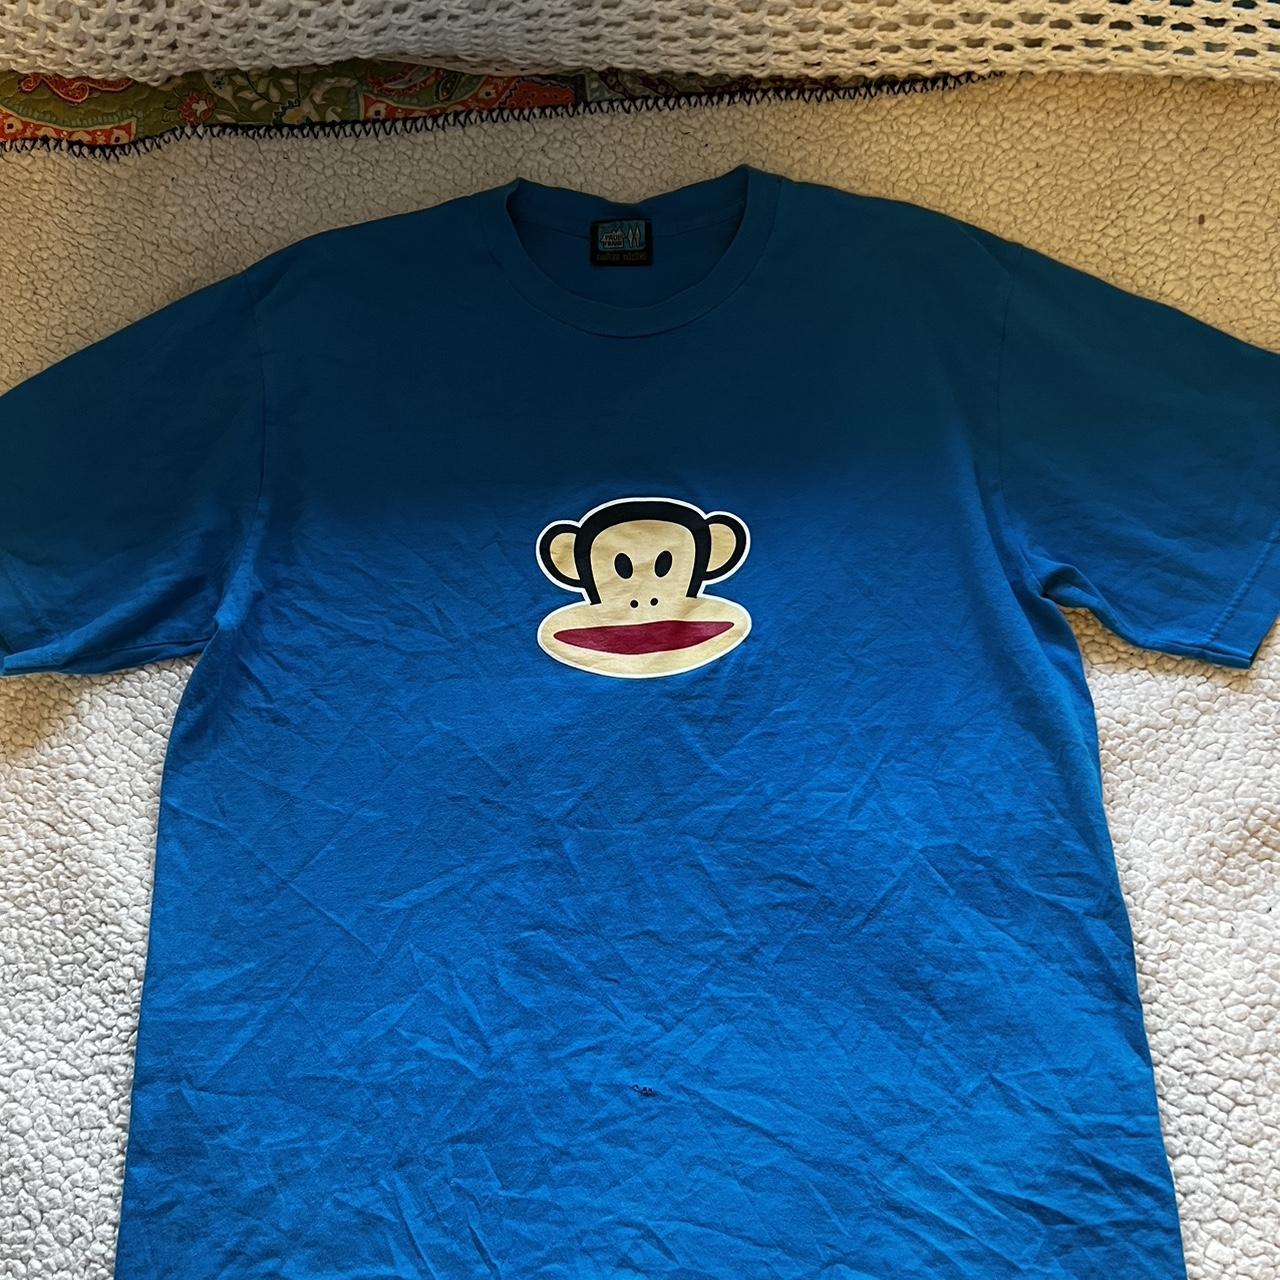 Paul frank industries t-shirt - Depop